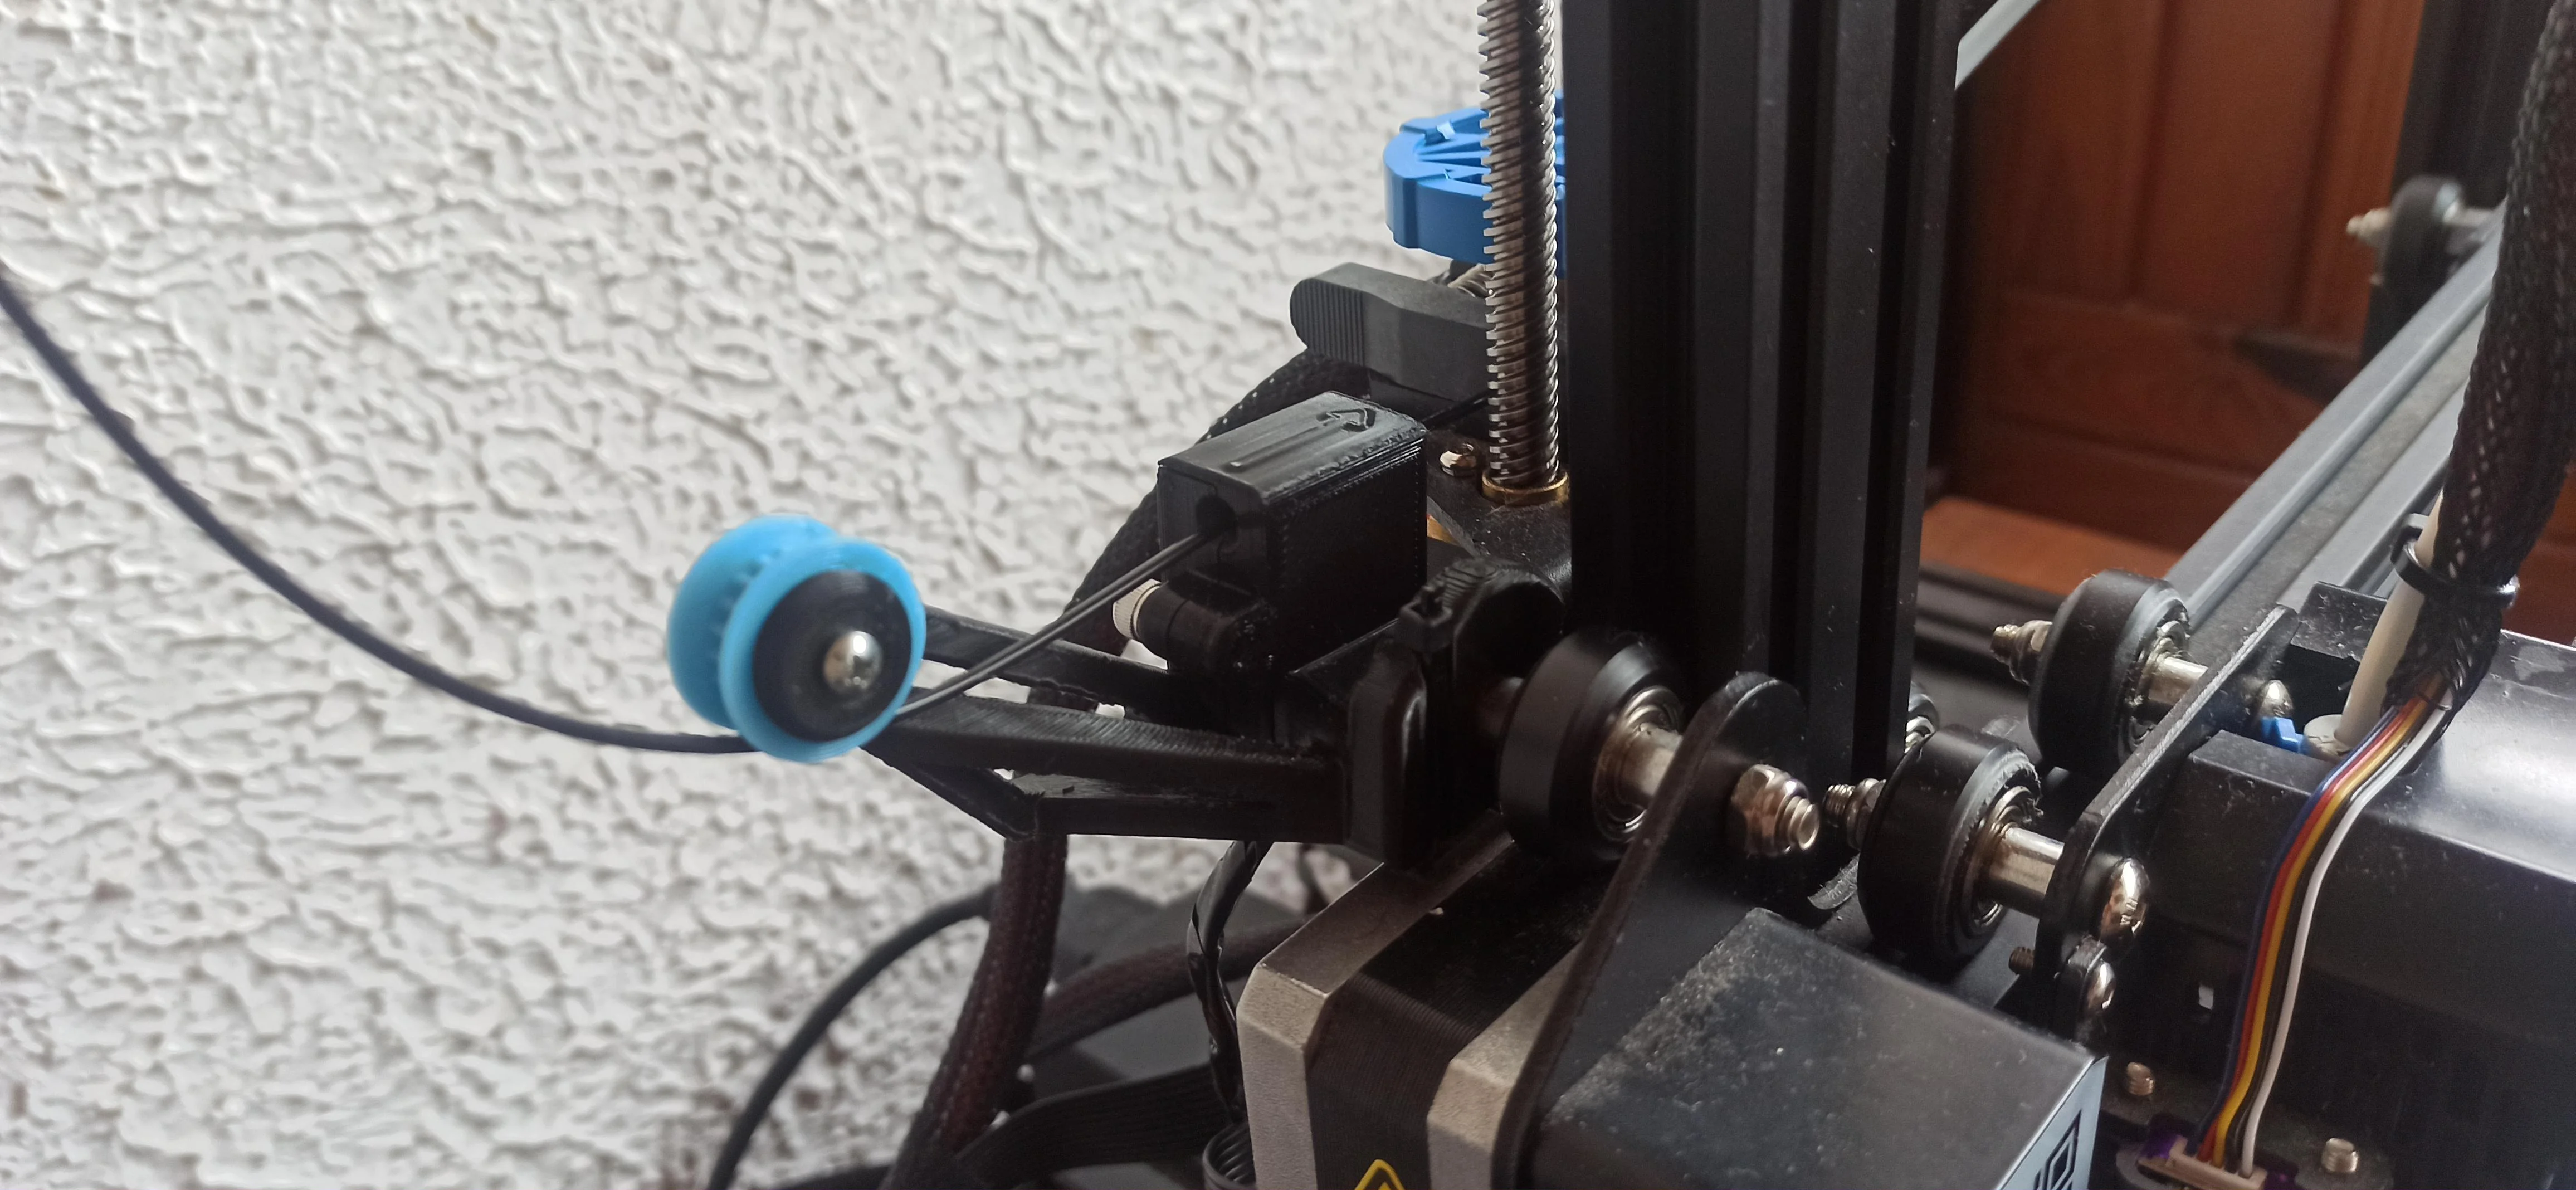 Ender 3 v2 filament sensor with original Z endstop.